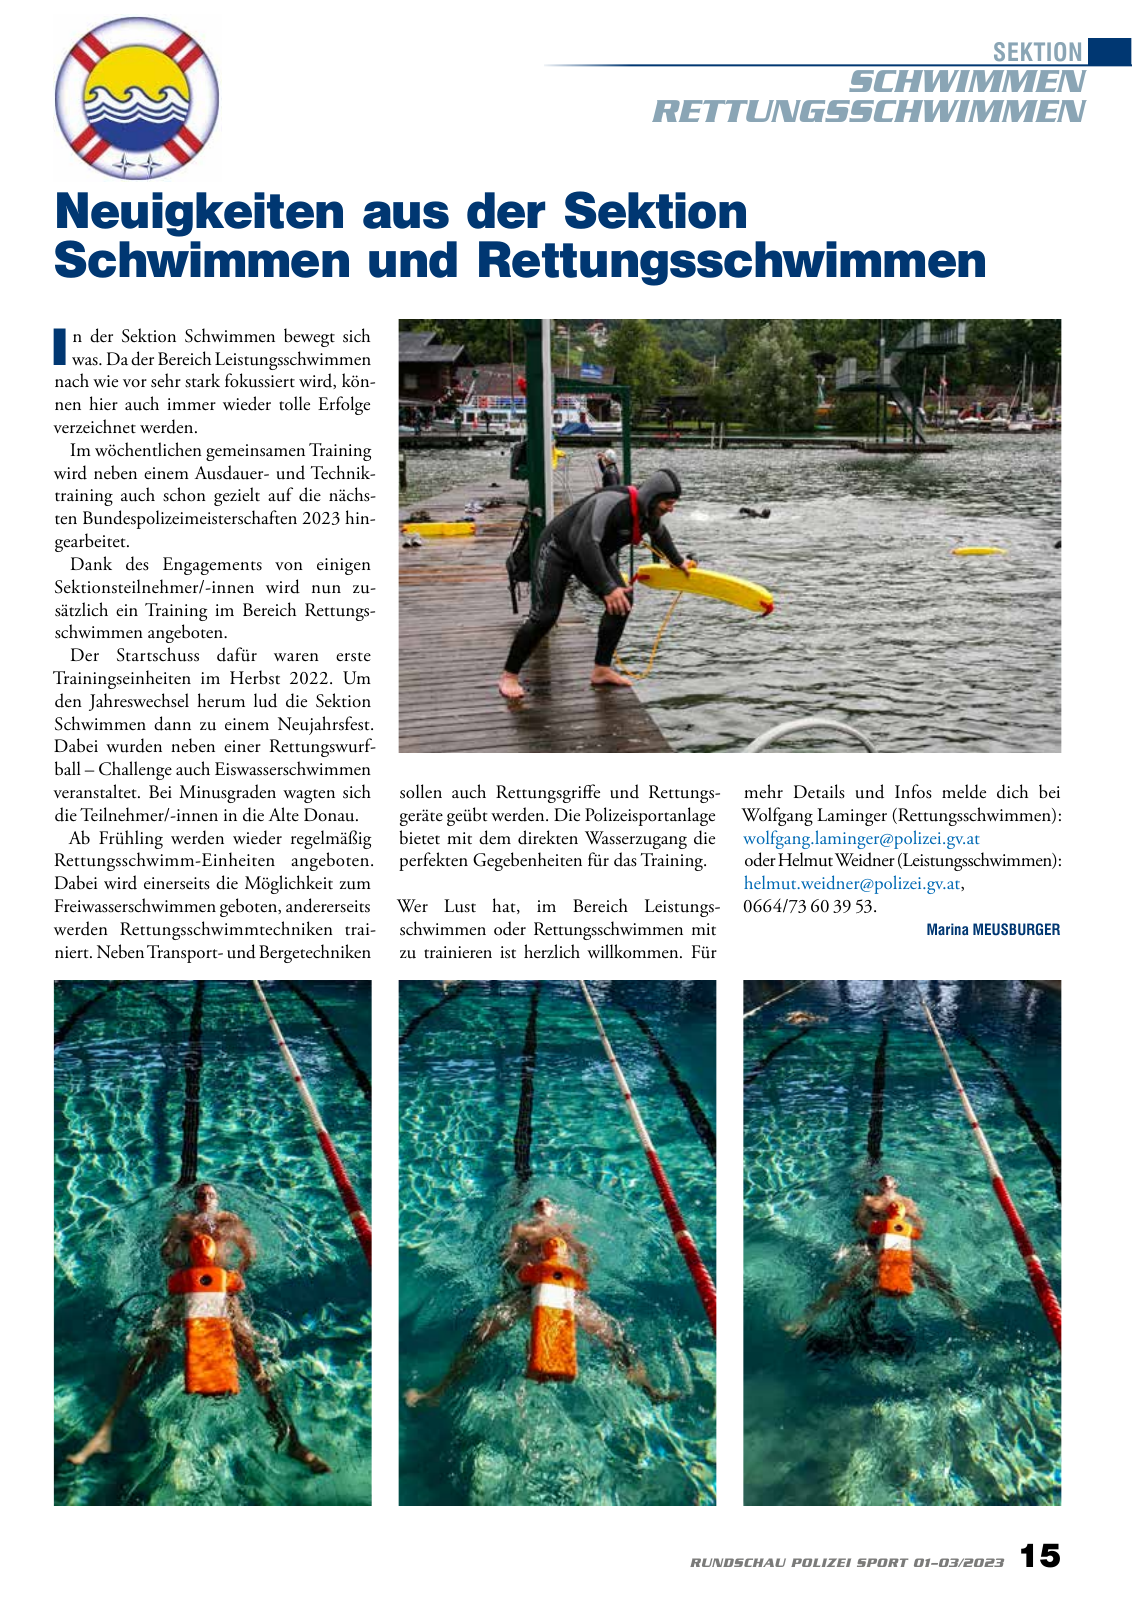 Vorschau Rundschau Polizei Sport 01-03/2023 Seite 15